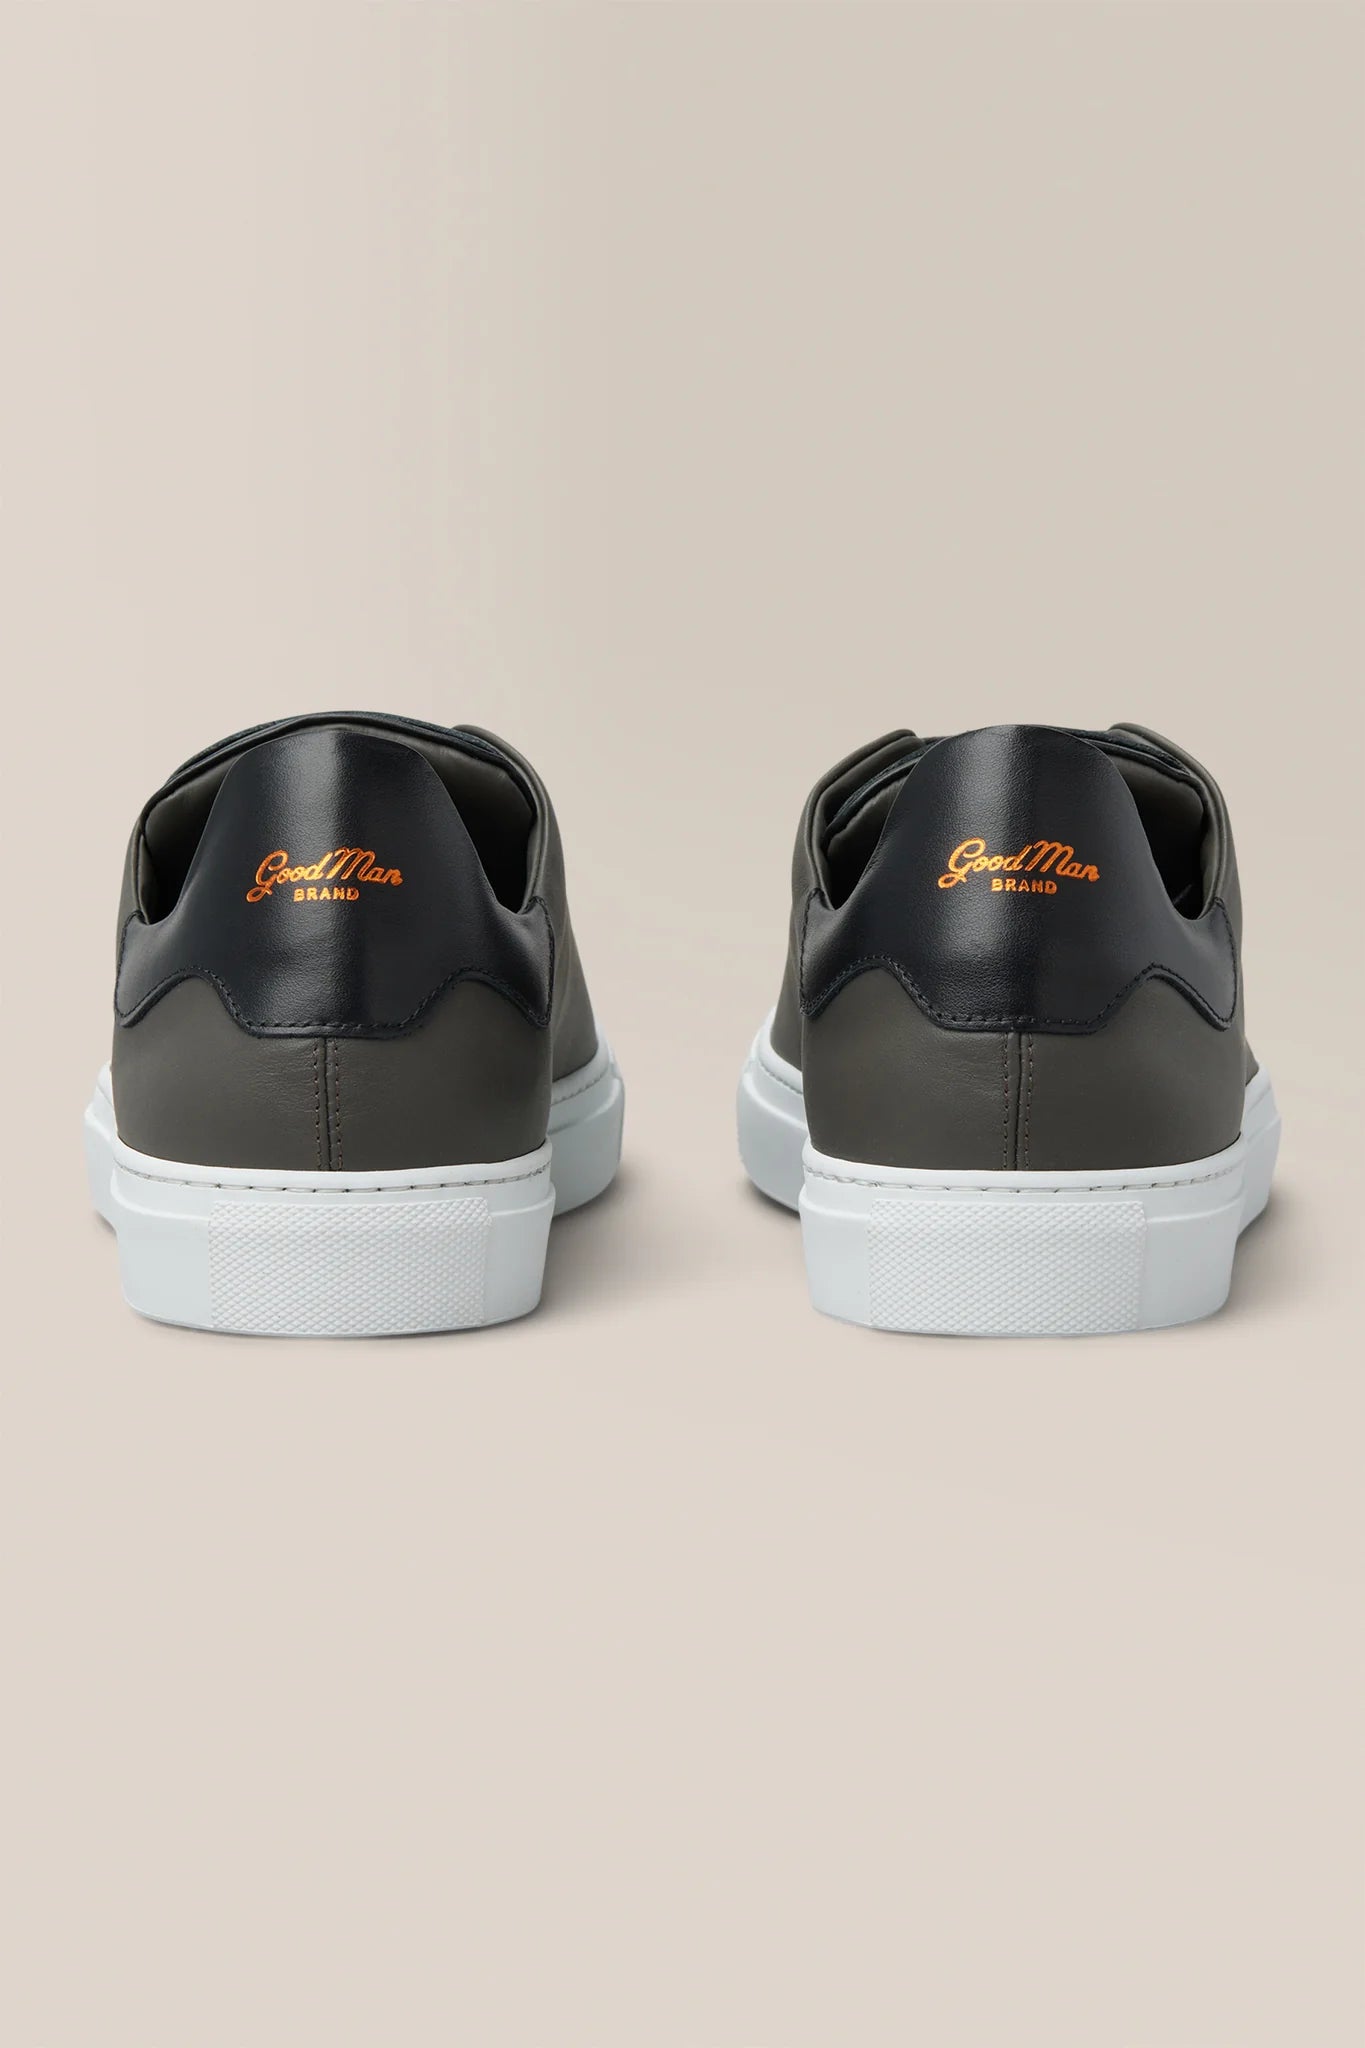 GoodMan Brand Legend Z Lo Top Sneaker G97Z-11